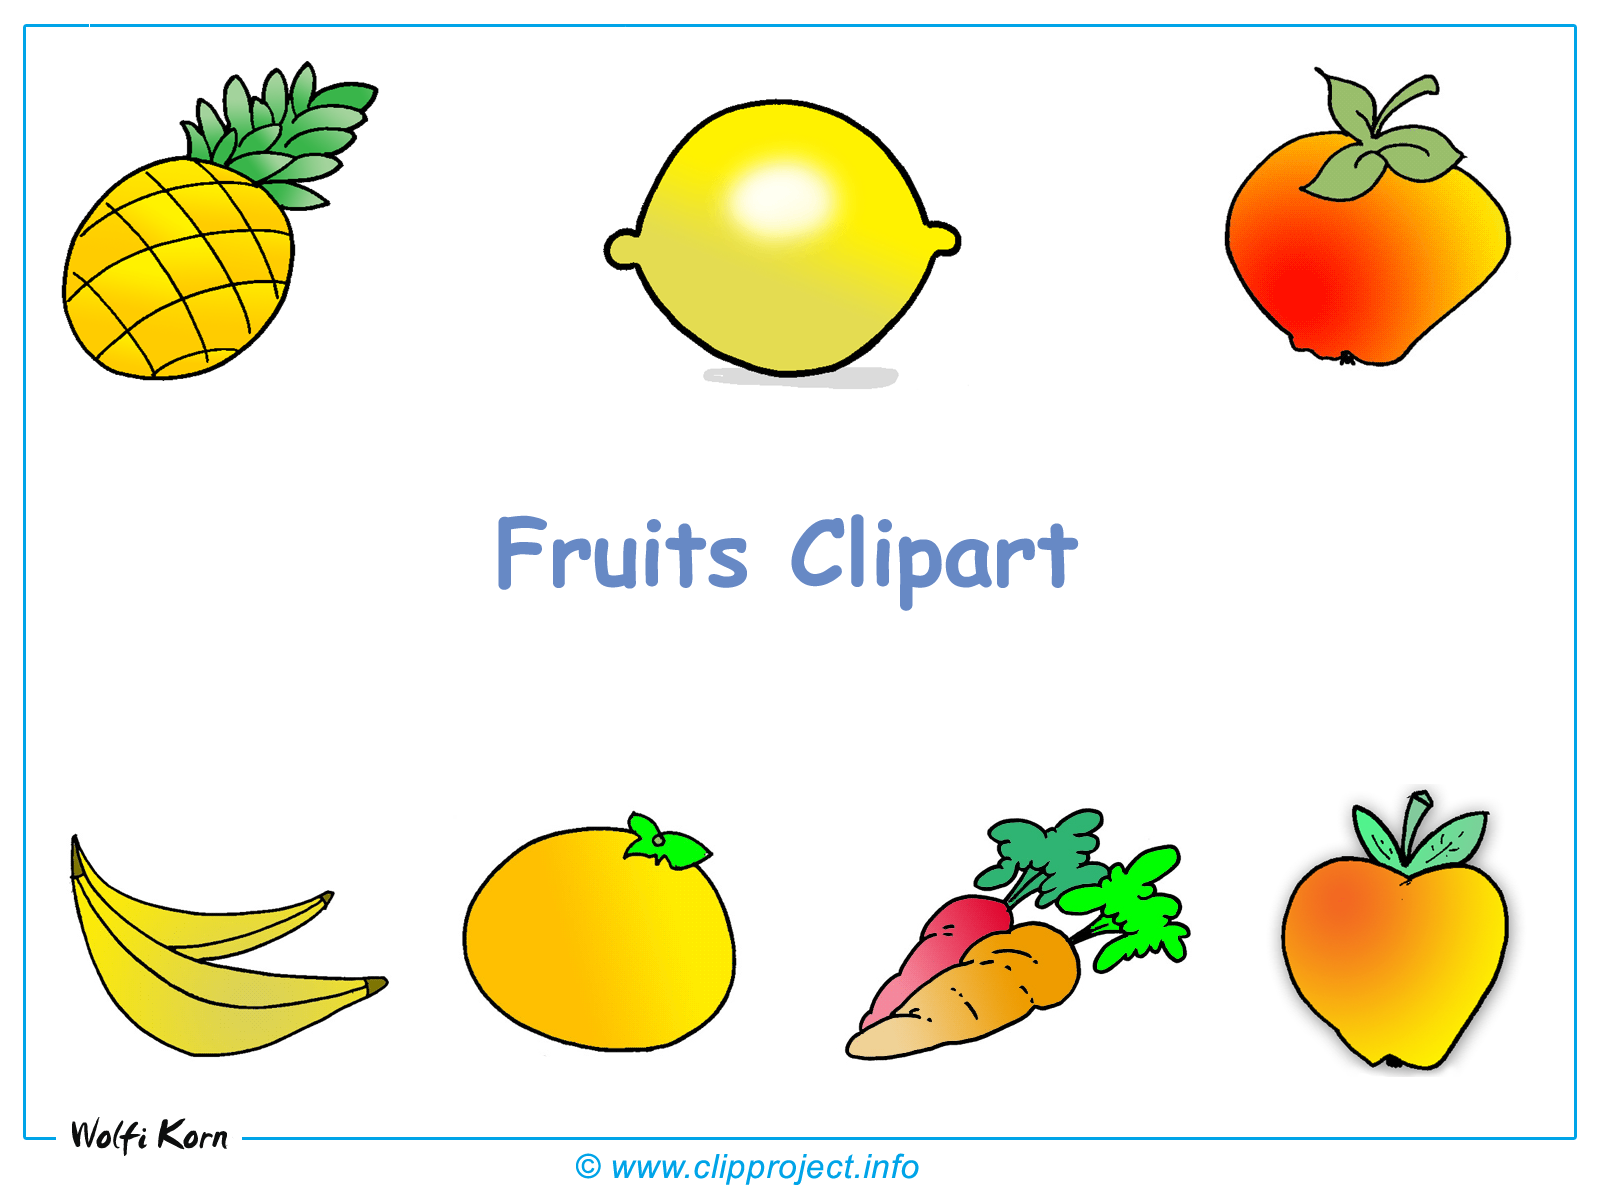 image clipart gratuit fruits - photo #2